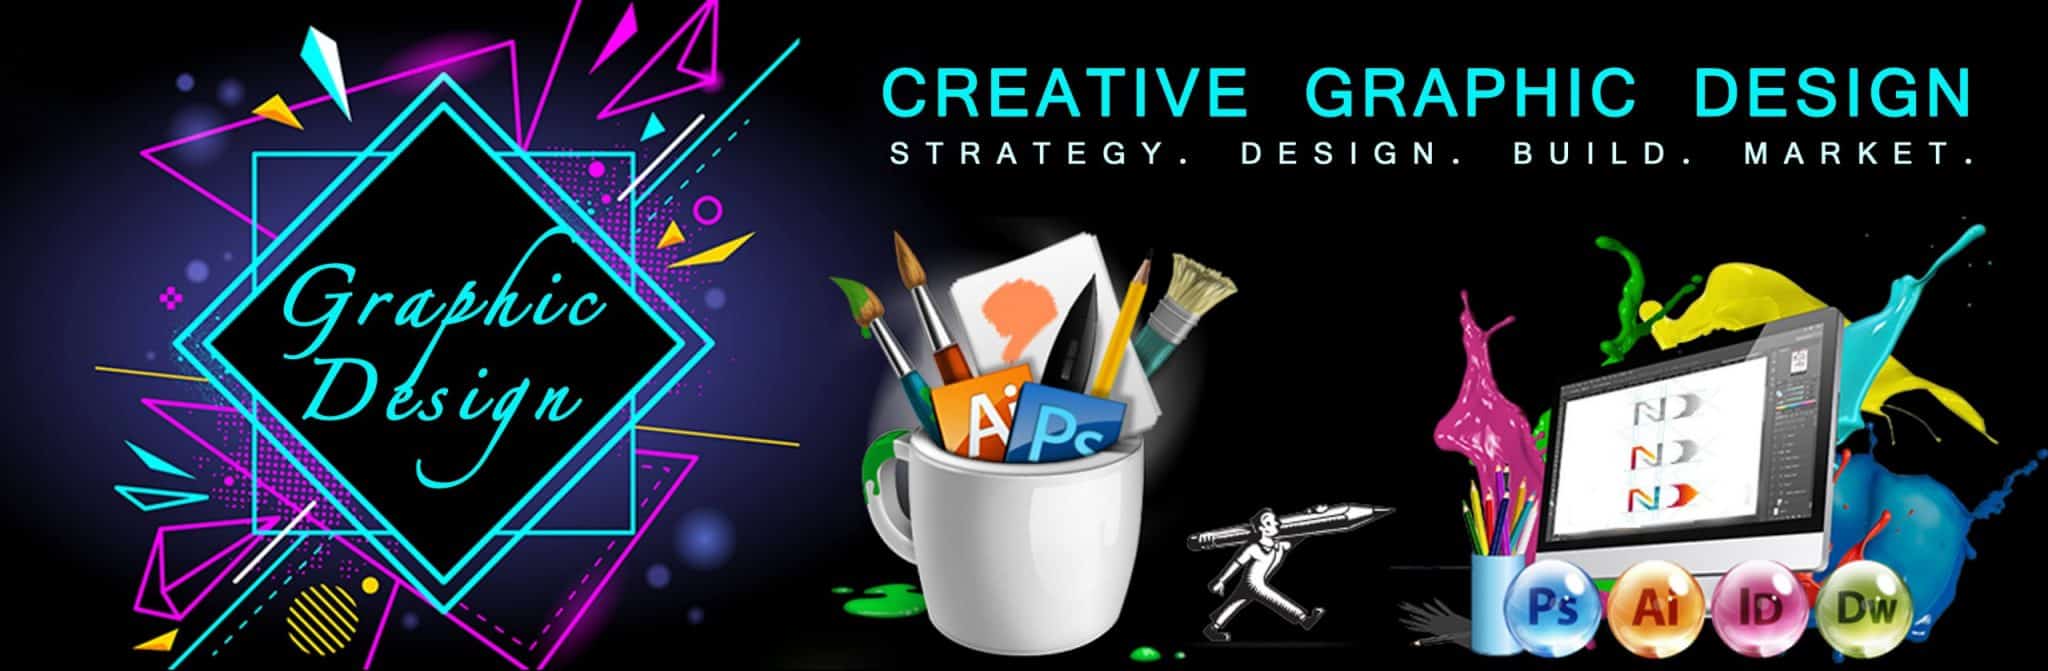 Graphic Design Company In India